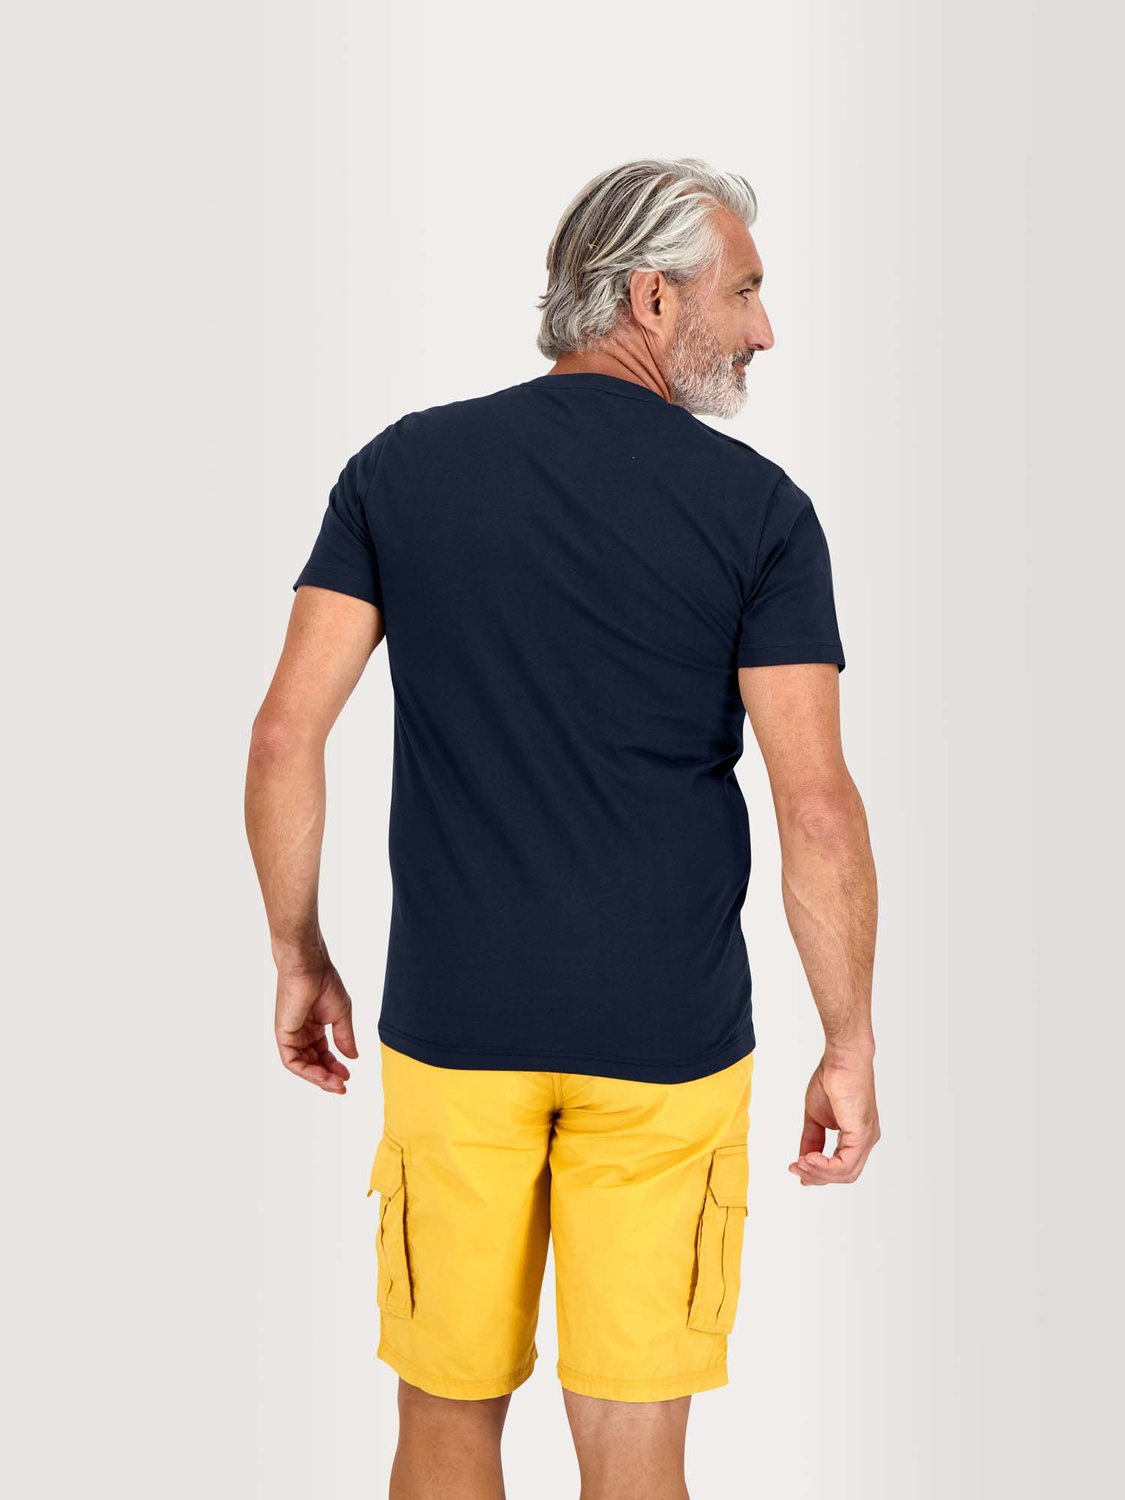 Tee Shirt Homme Manches Courtes Coton Biologique Marine